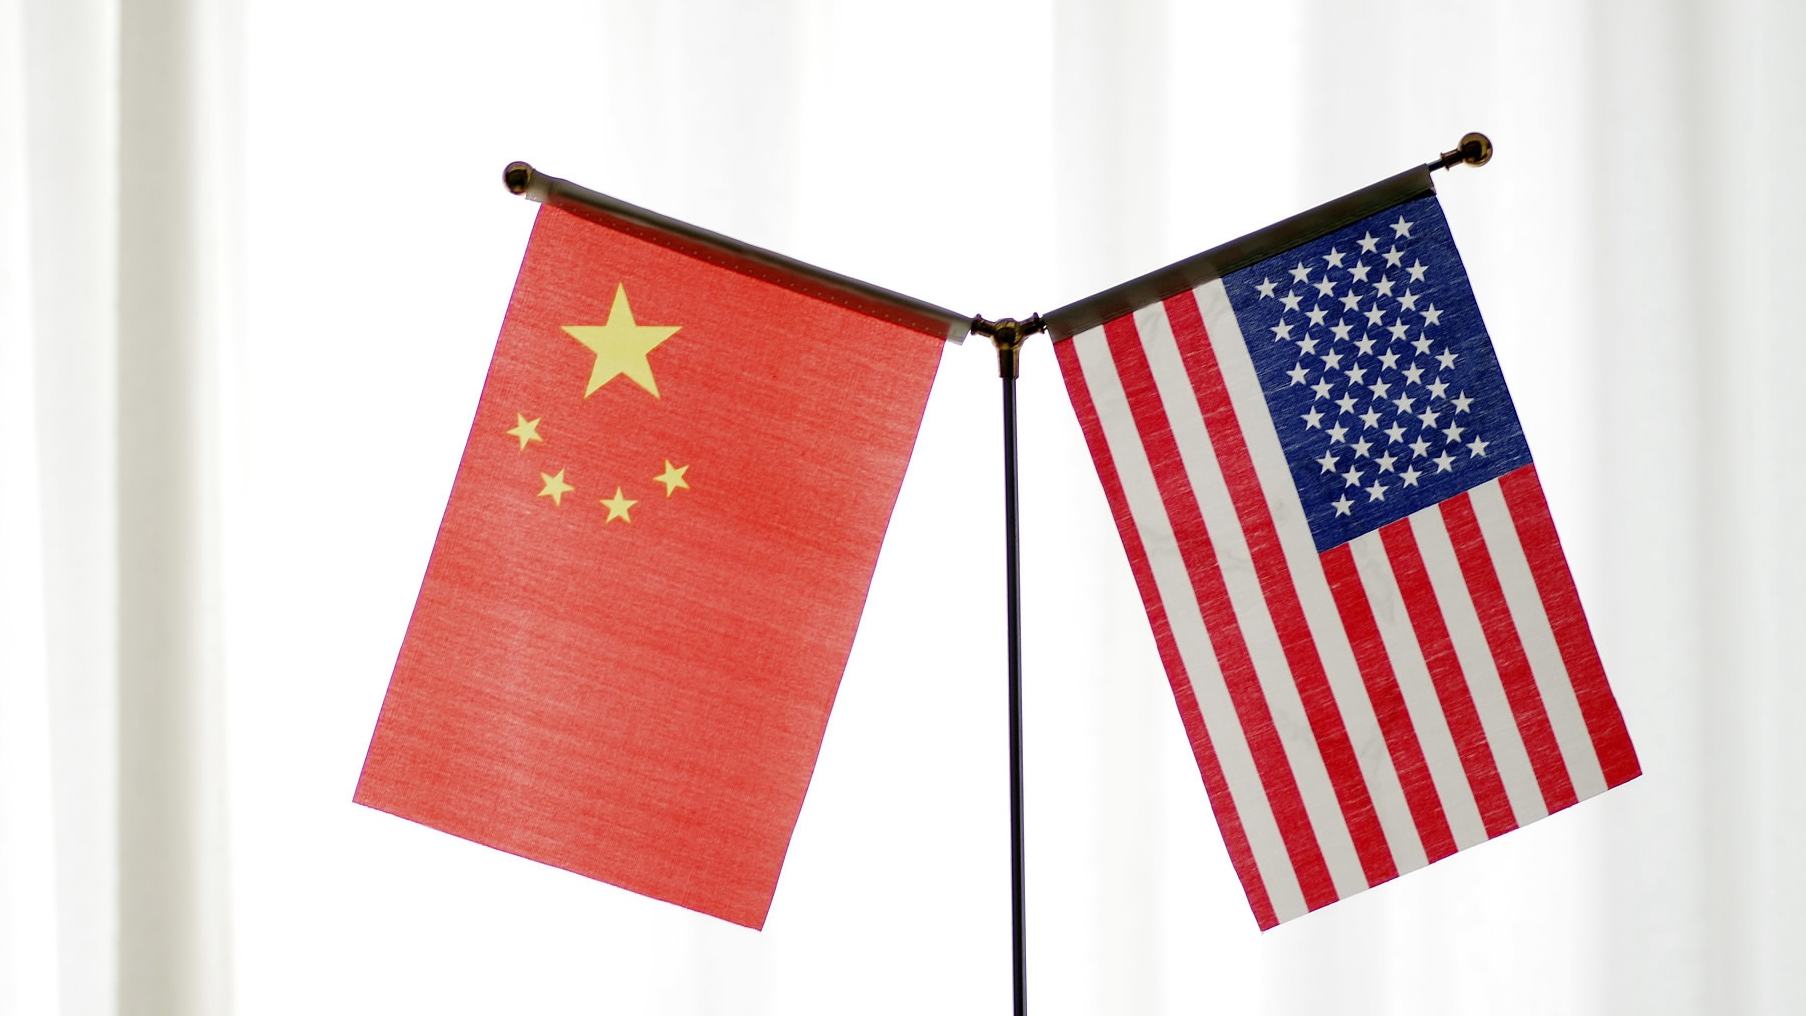 Tiongkok dan Amerika Serikat harus memperkuat komunikasi dan mengelola perbedaan dengan tepat